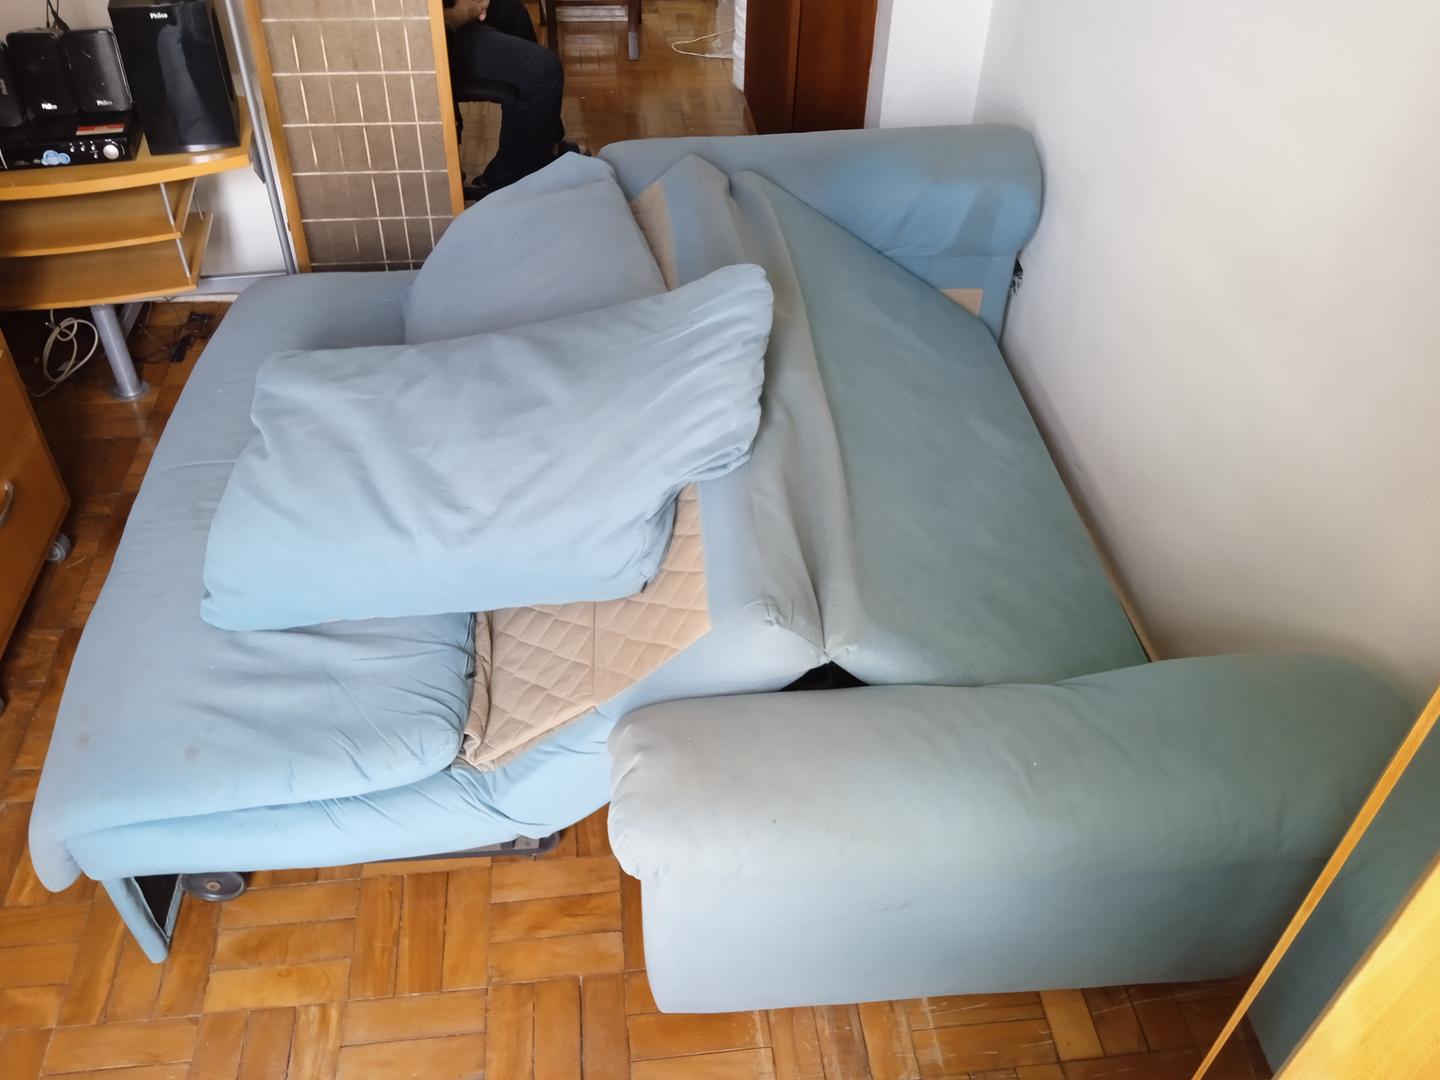 Sofa cama c/ 2 lugares em Estofado / Tecido Cinza 85 cm x 190 cm x 97 cm